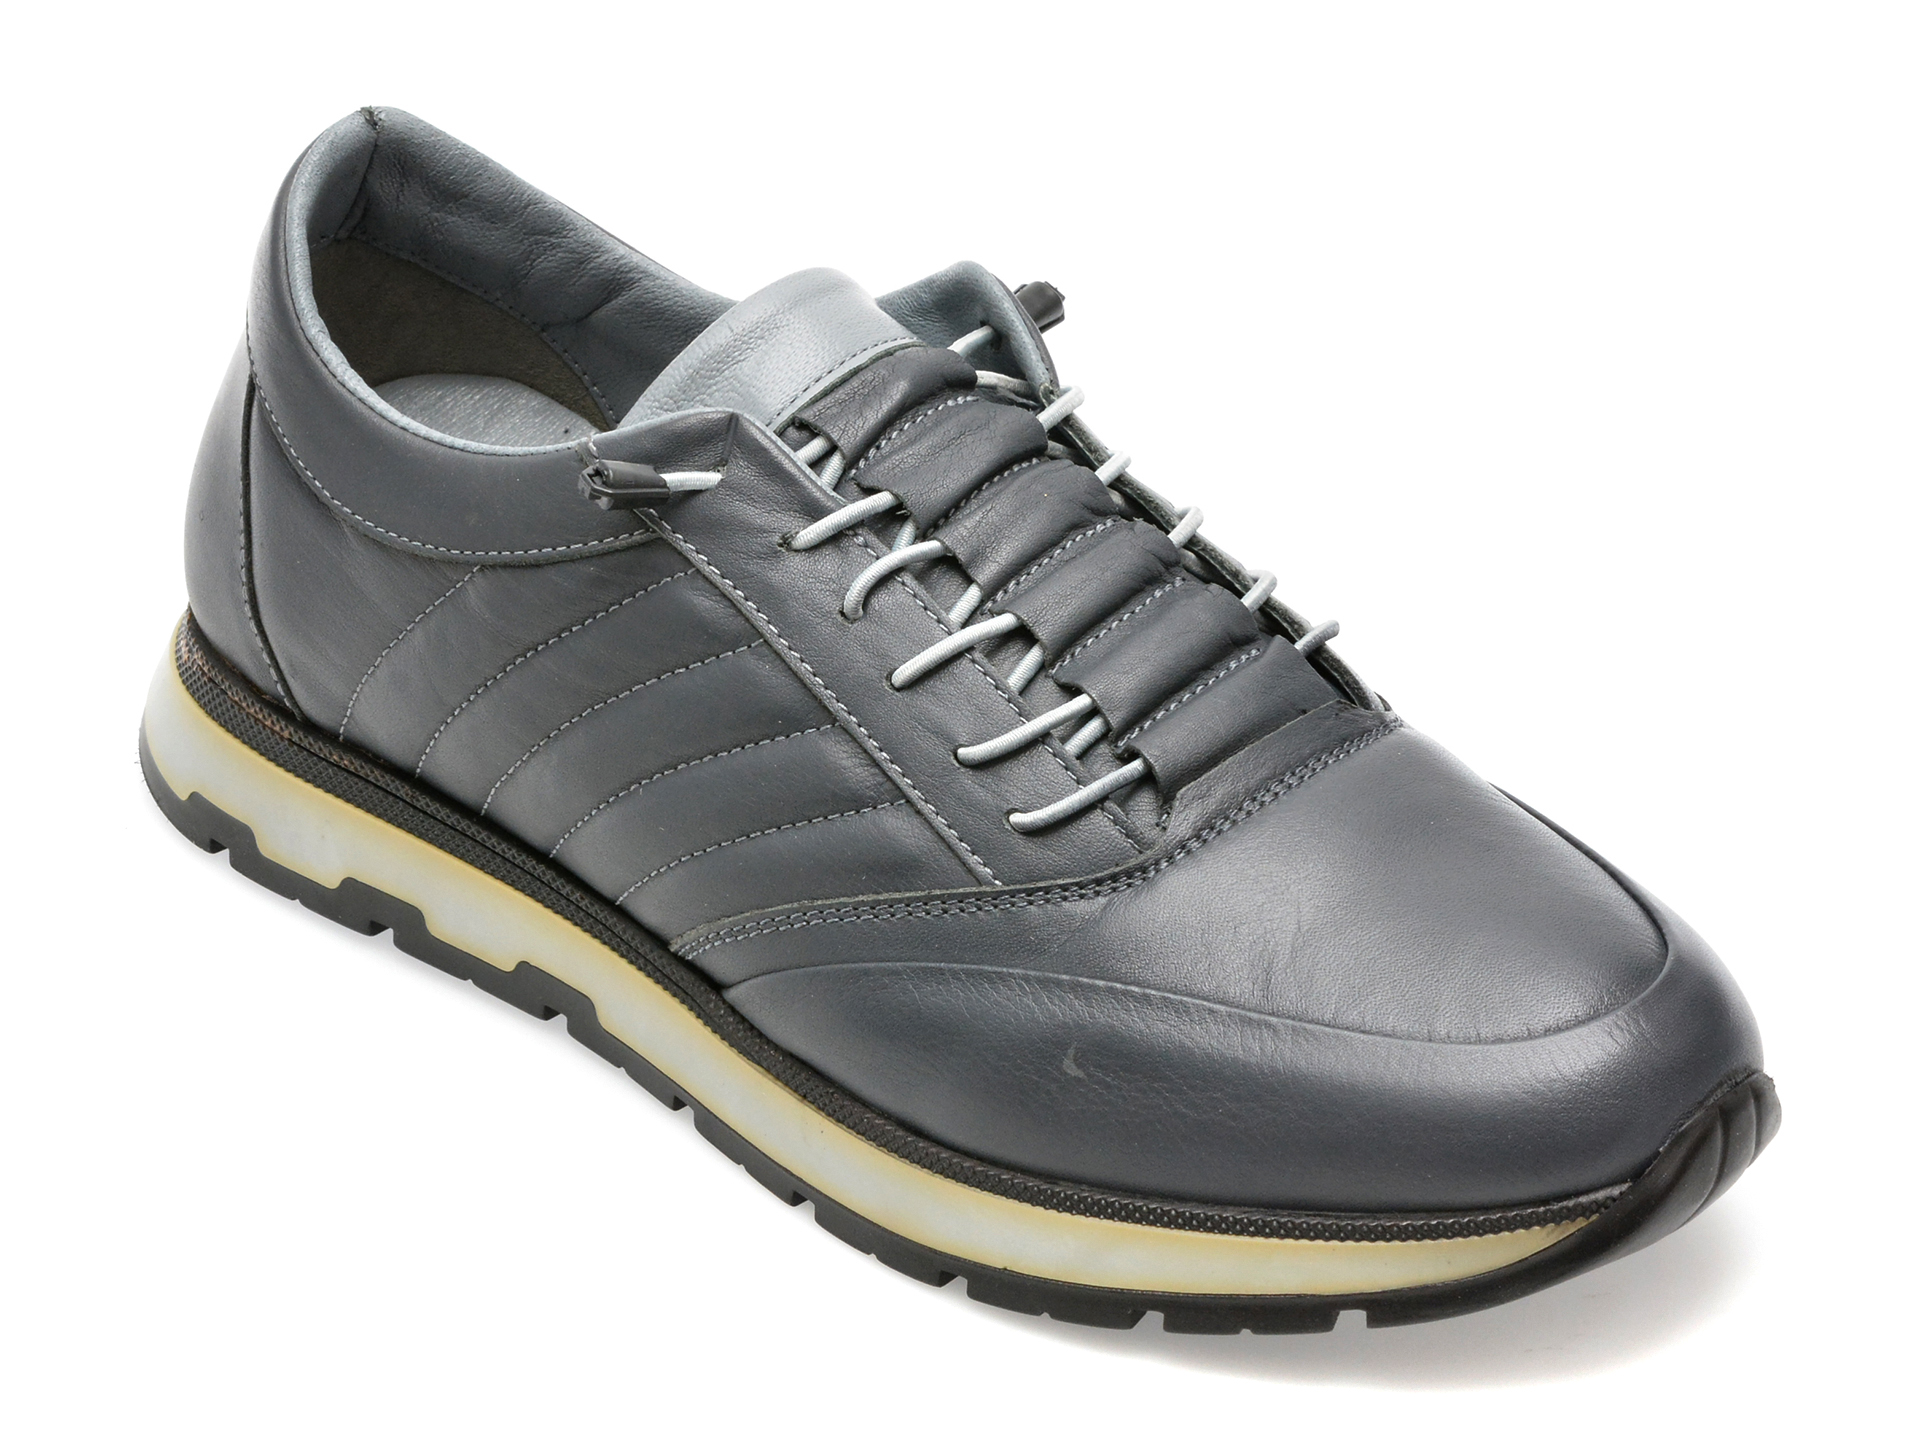 Pantofi AXXELLL gri, SY705, din piele naturala